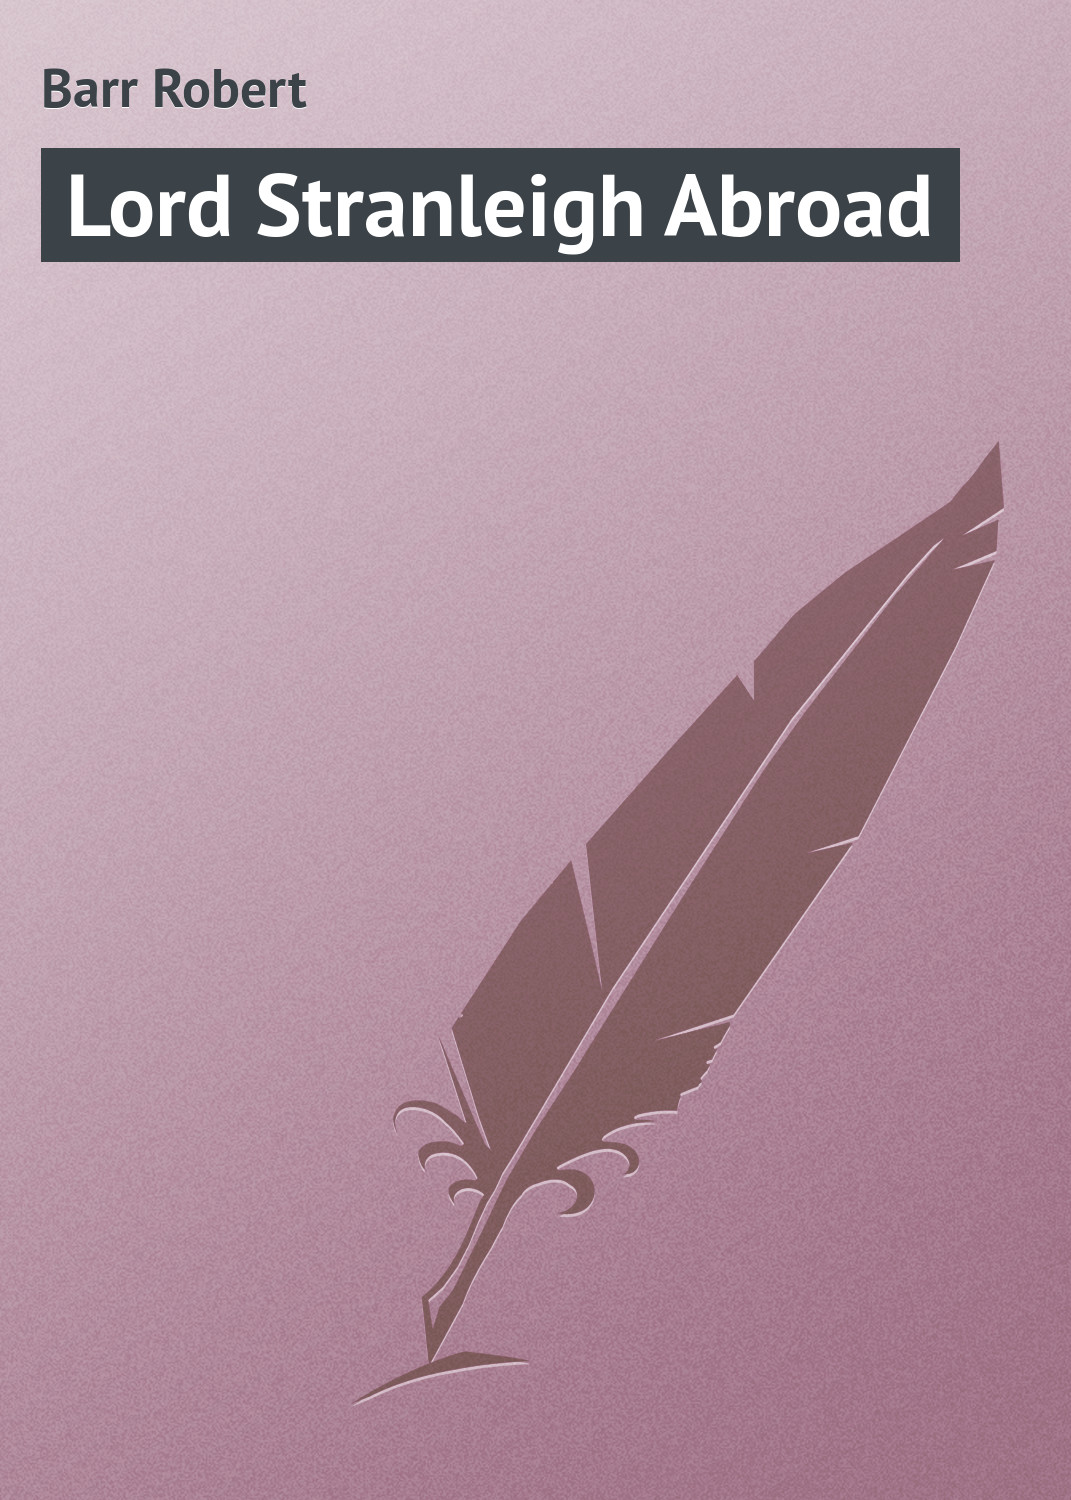 Книга Lord Stranleigh Abroad из серии , созданная Robert Barr, может относится к жанру Зарубежная классика. Стоимость электронной книги Lord Stranleigh Abroad с идентификатором 23166883 составляет 5.99 руб.